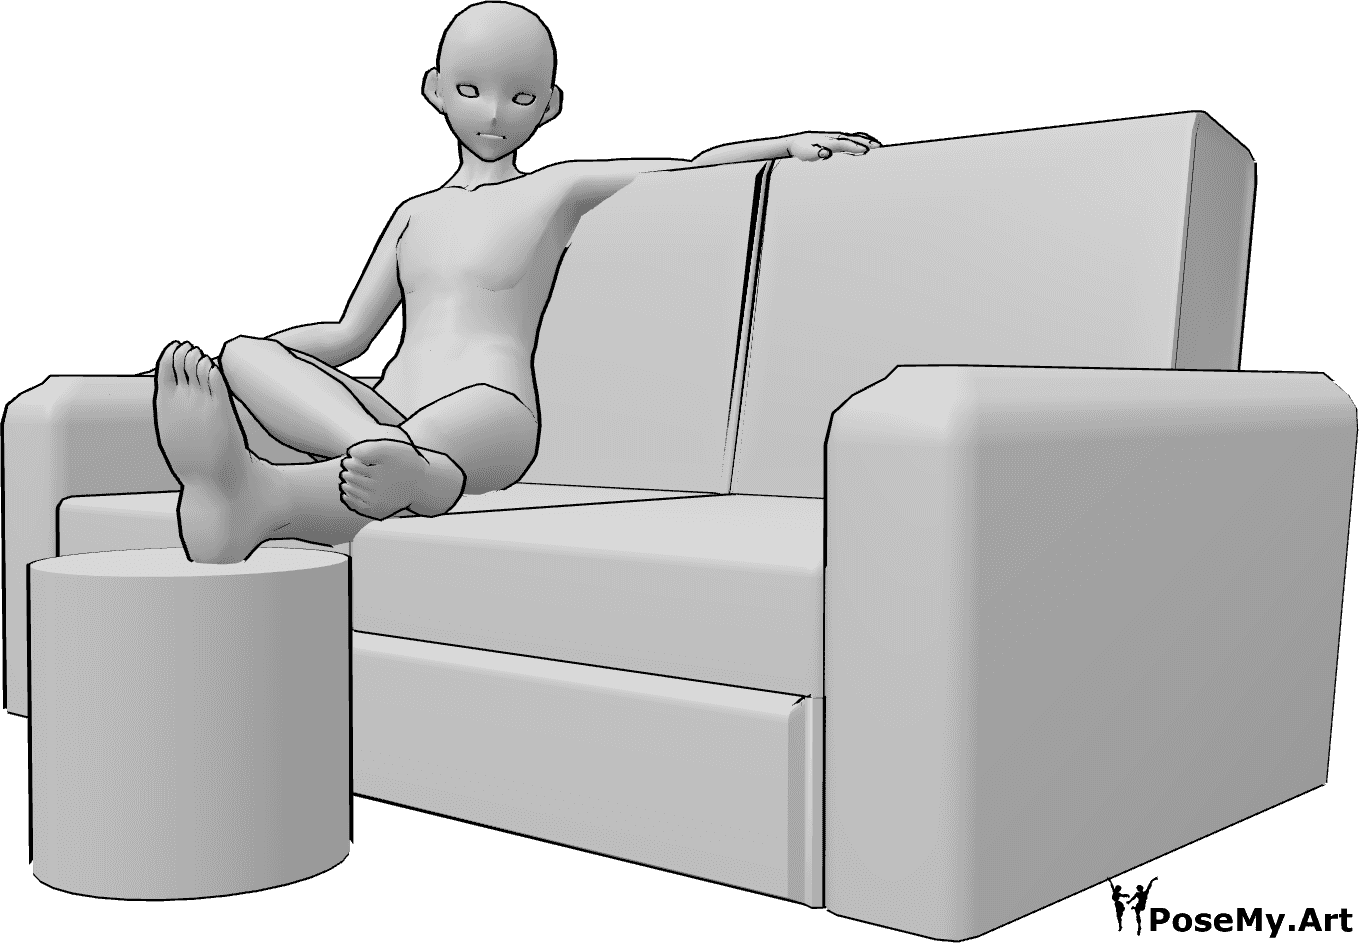 Referencia de poses- Anime masculino pies pose - Anime masculino está sentado en el sofá y descansando las piernas, anime masculino pies pose